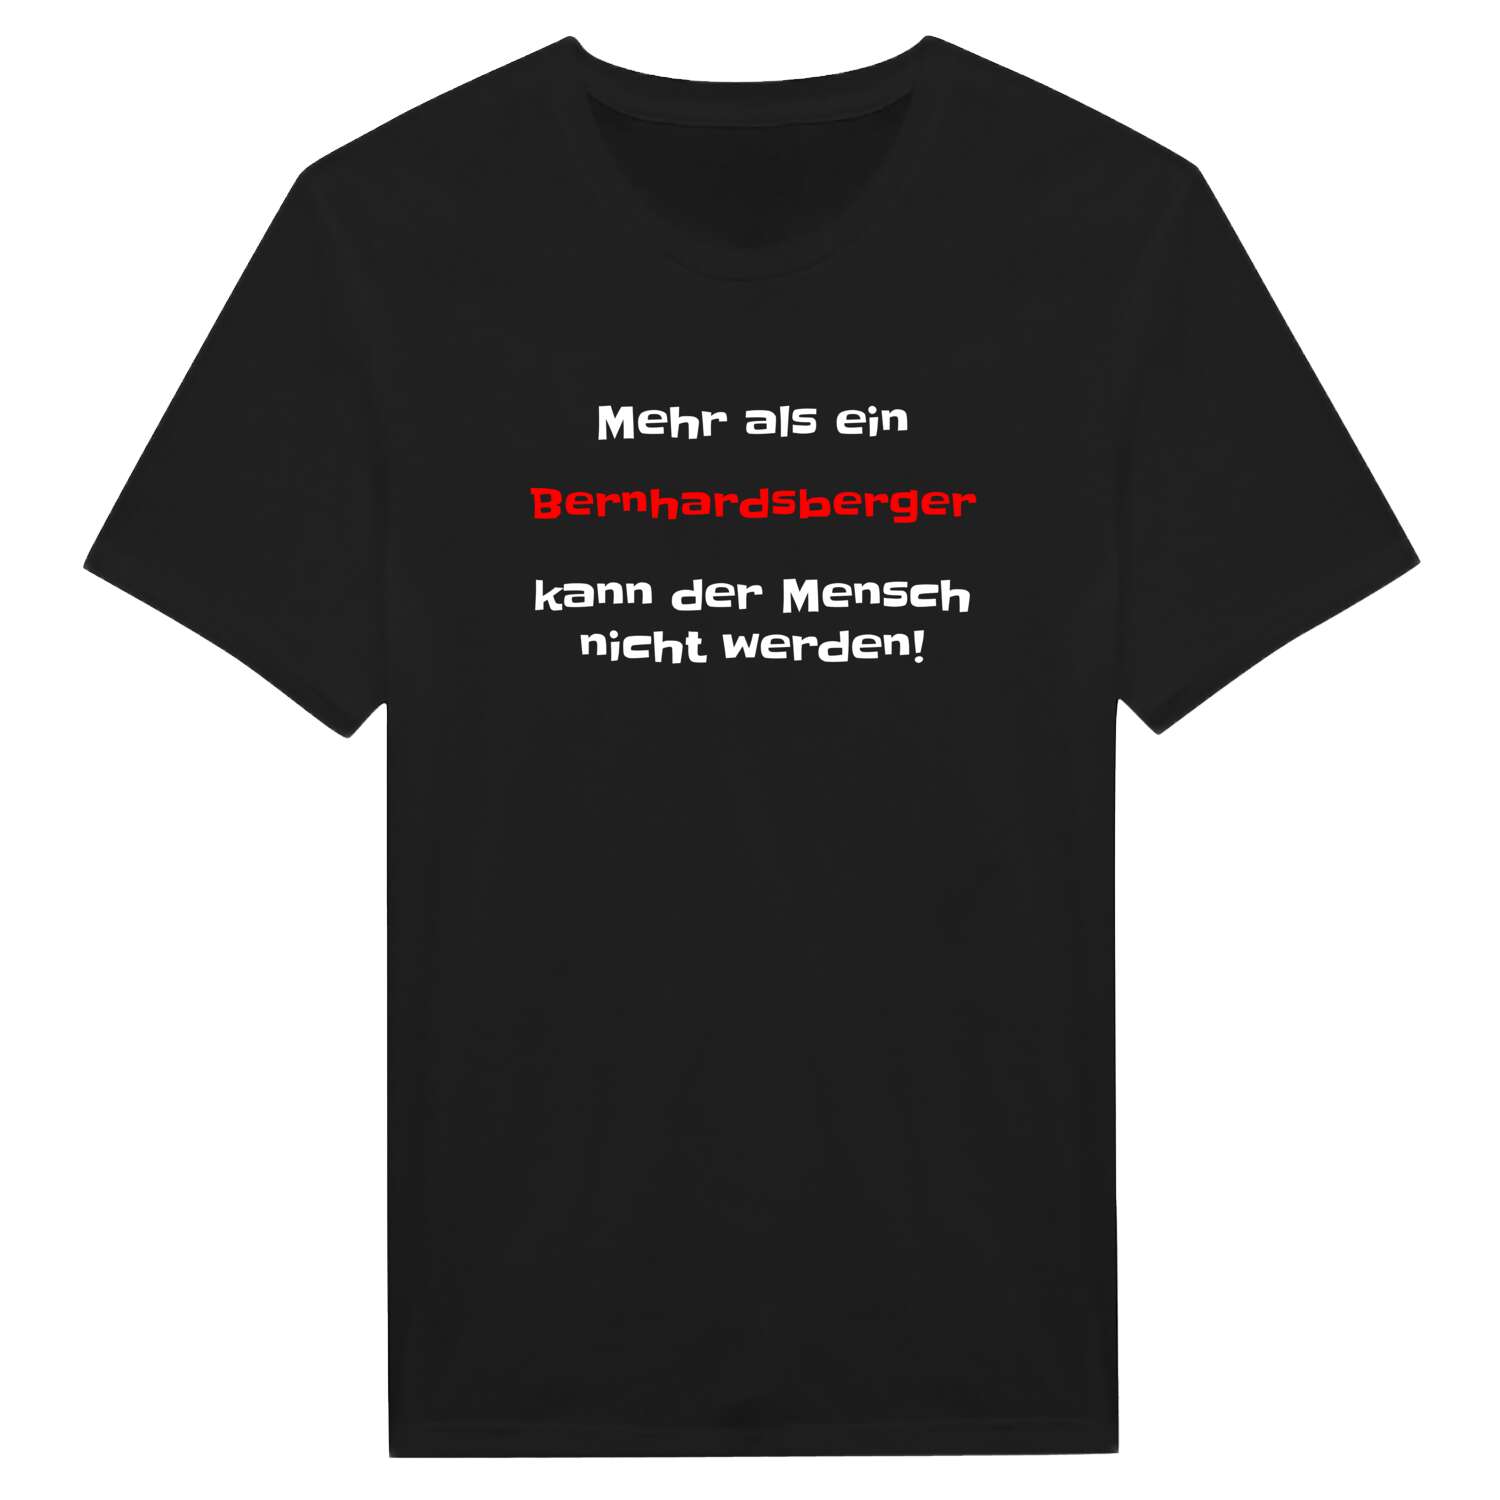 Bernhardsberg T-Shirt »Mehr als ein«